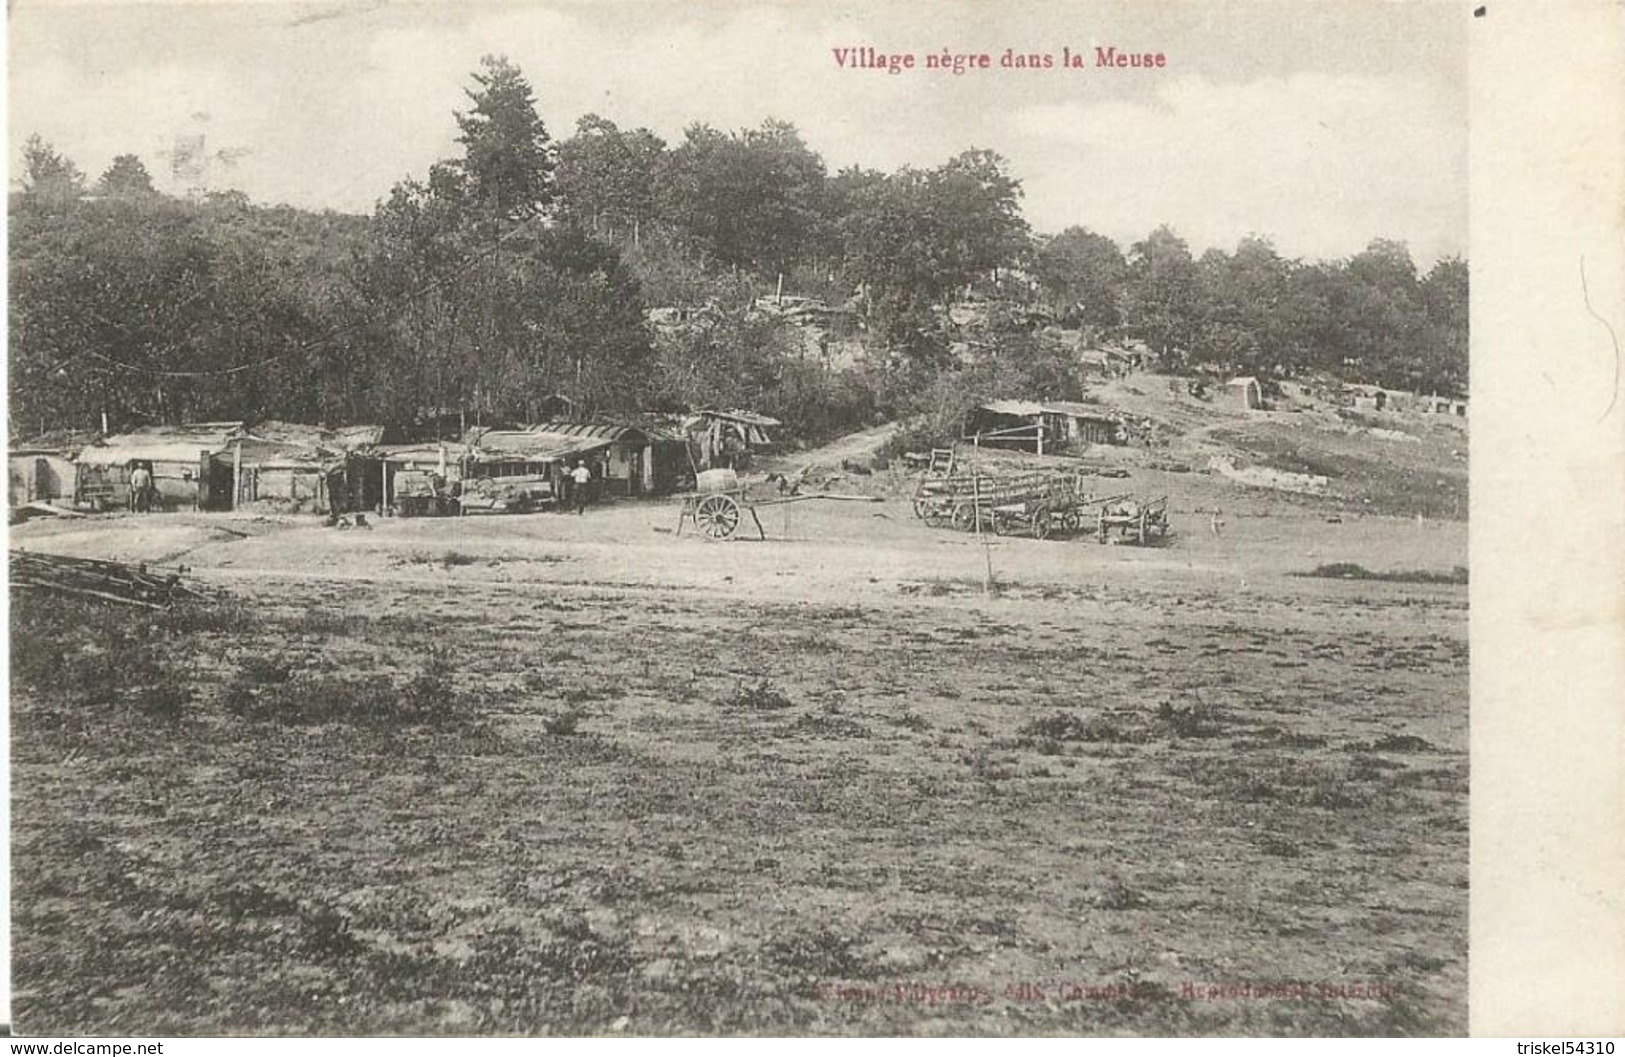 Carte Postale Soldats Français, Village Nègre Dans La Meuse / 14-18 / WW1 / POILU - 1914-18